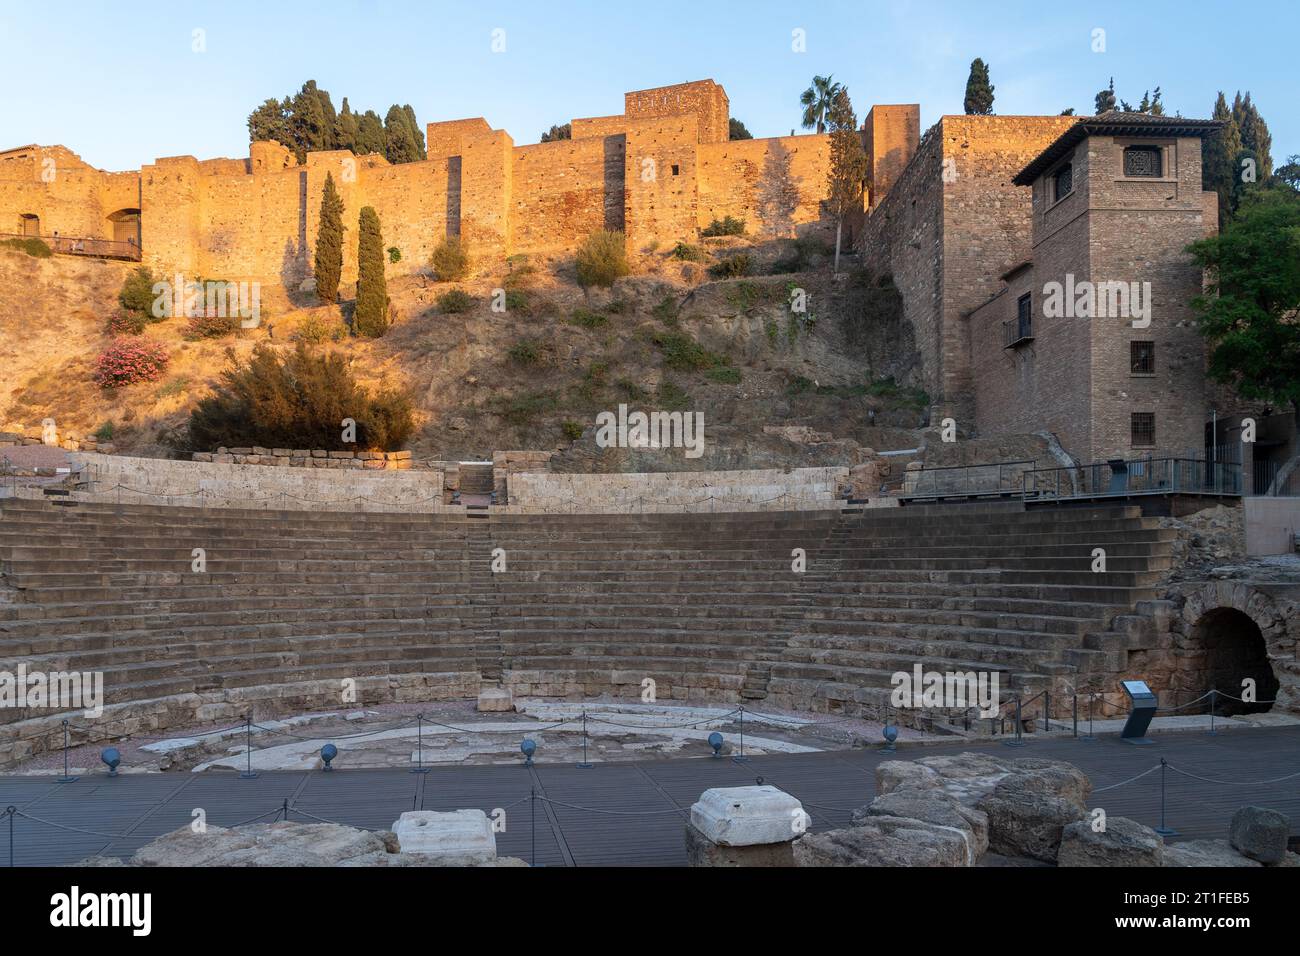 La forteresse Alcazaba à Malaga a été construite pendant le règne du Royaume arabe Al-Andalus. Le théâtre romain est le plus ancien monument de Malaga. Banque D'Images